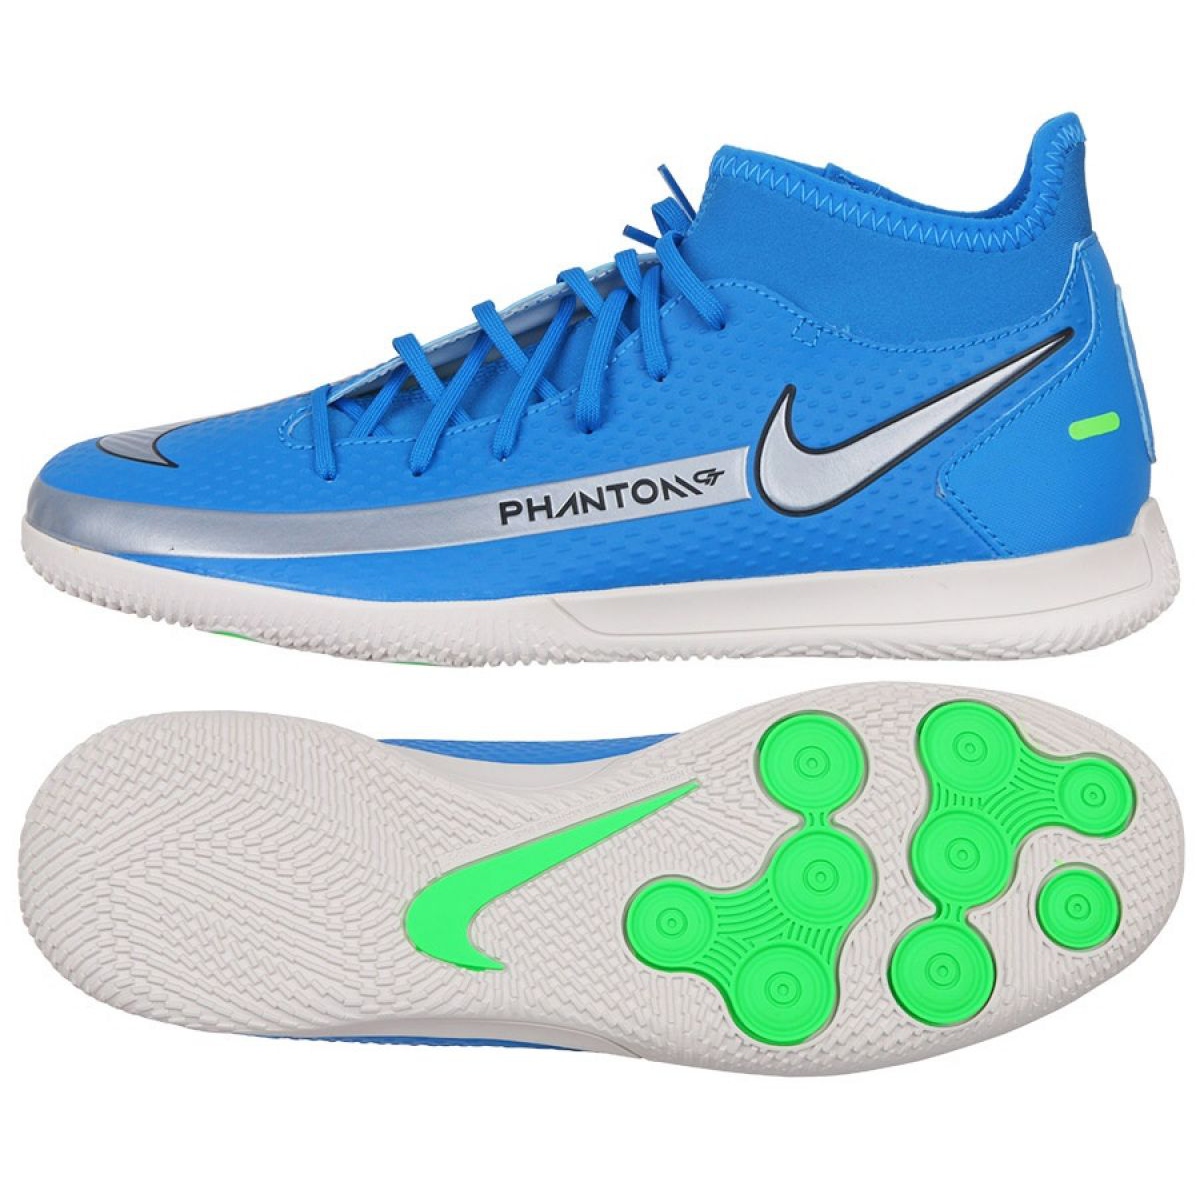 Buty piłkarskie Nike Phantom Gt Club Df Ic M CW6671 400 niebieskie niebieskie